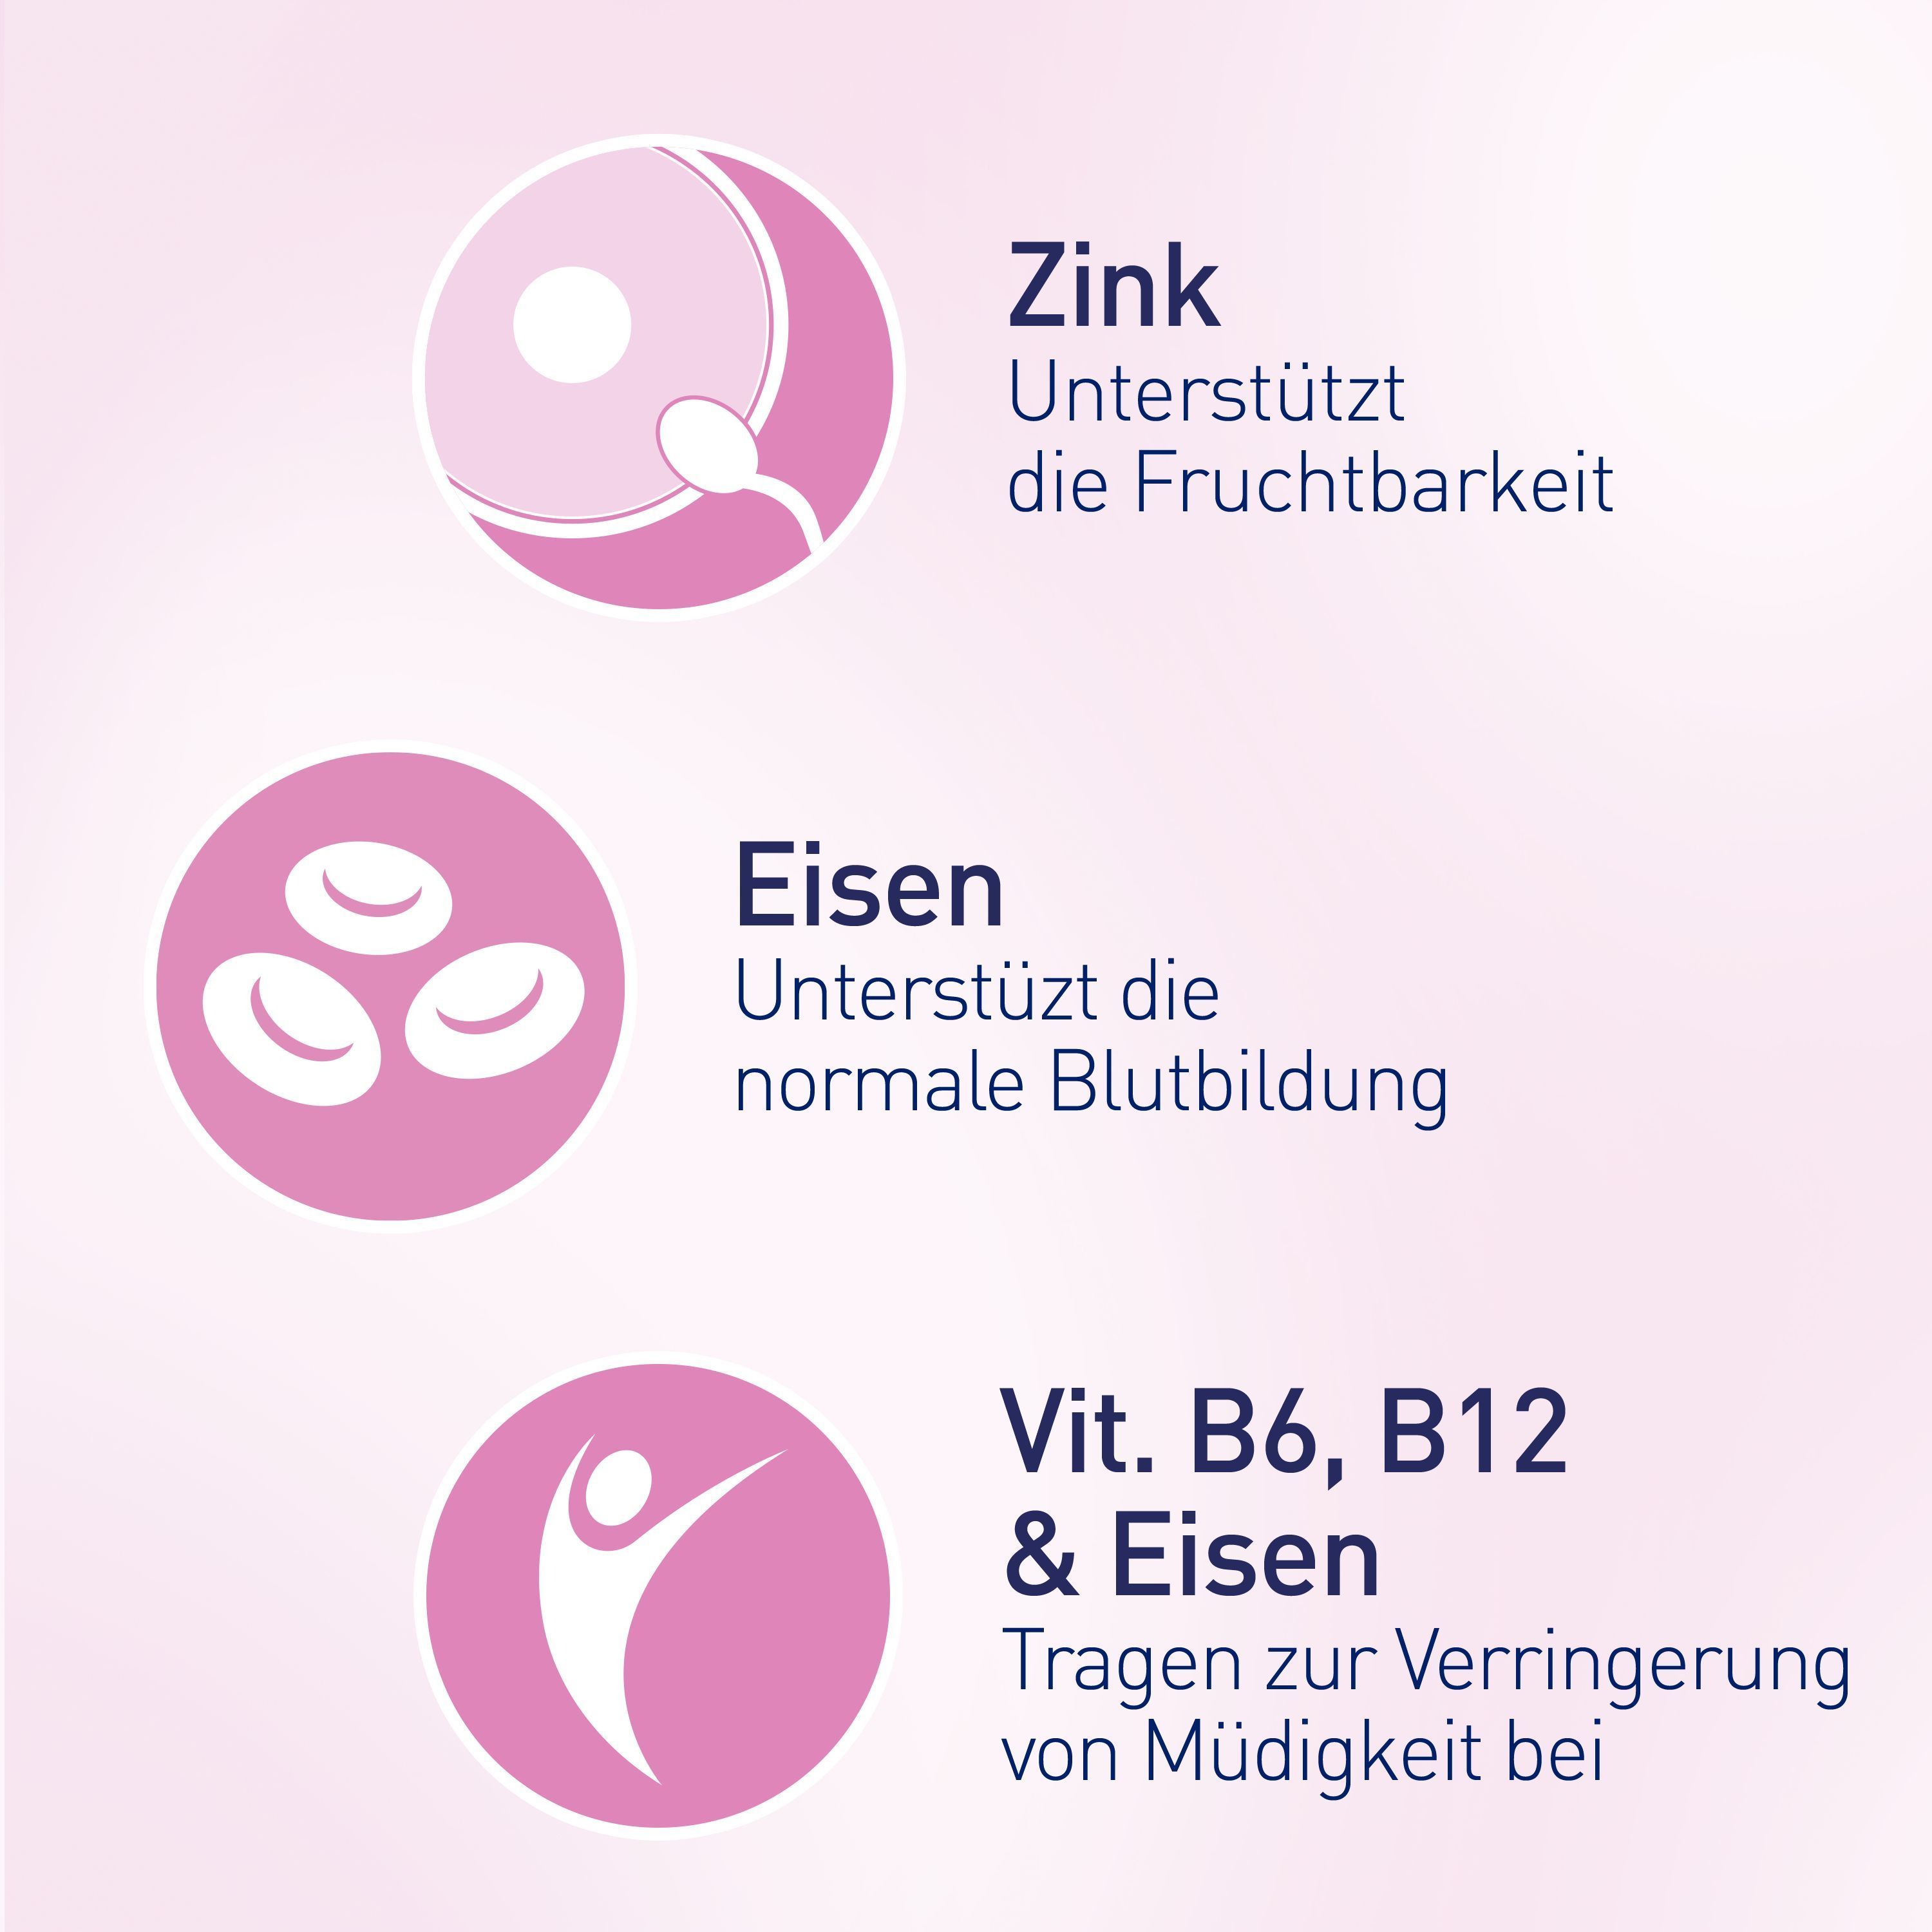 elevit® 1 Kinderwunsch & Schwangerschaft